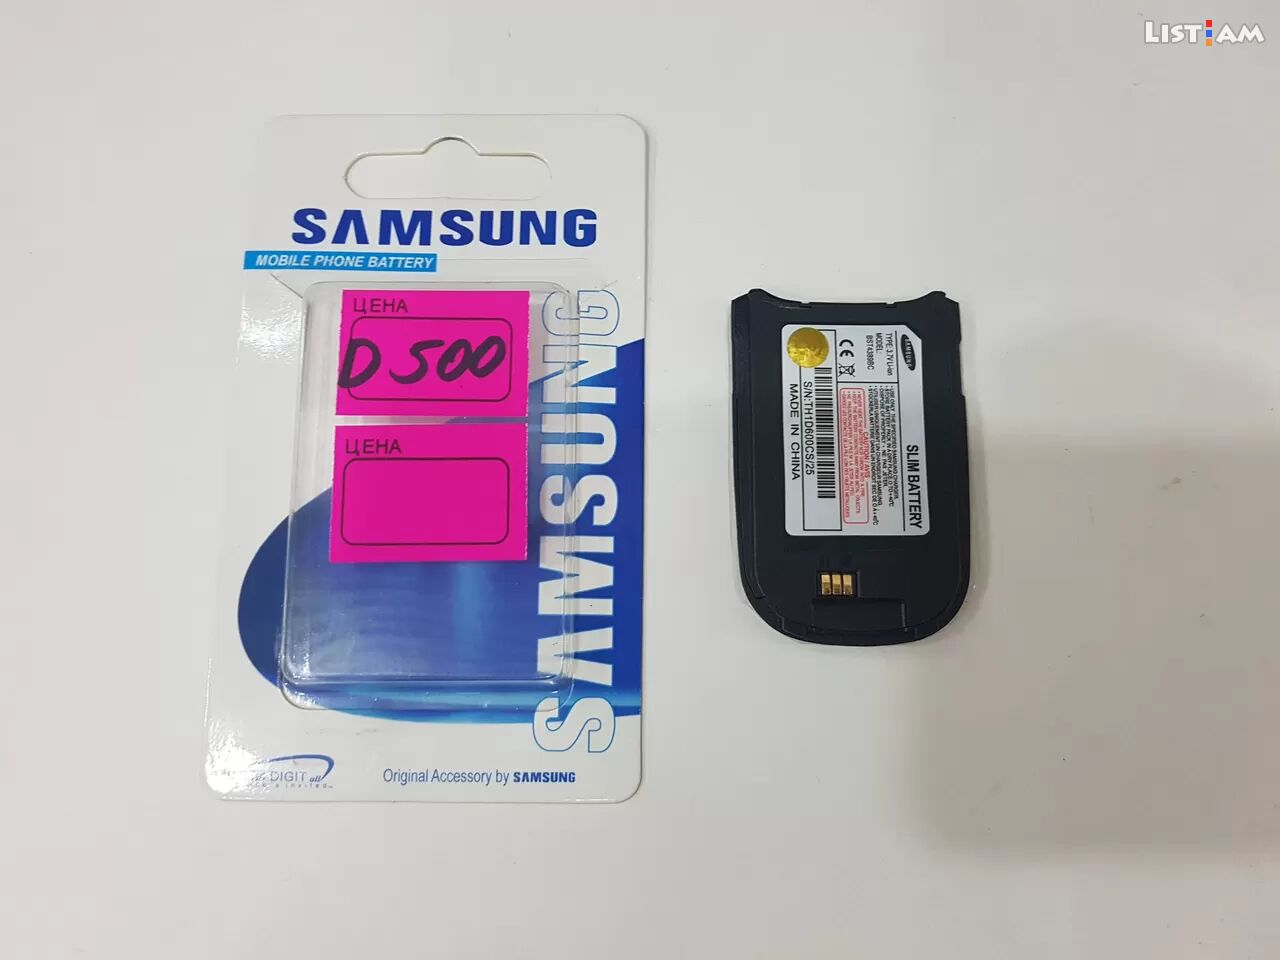 Samsung d500 battery